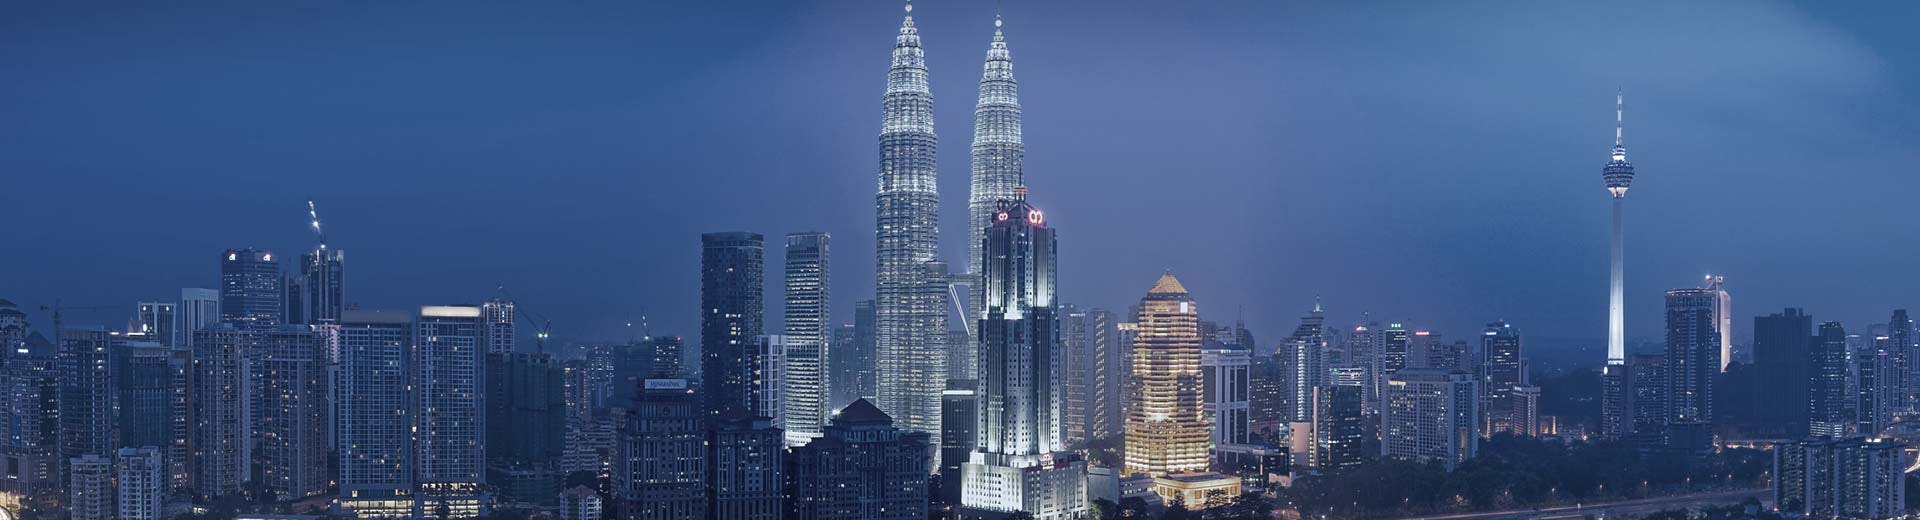 吉隆坡若隐若现的双子塔照亮了黑暗的天空。